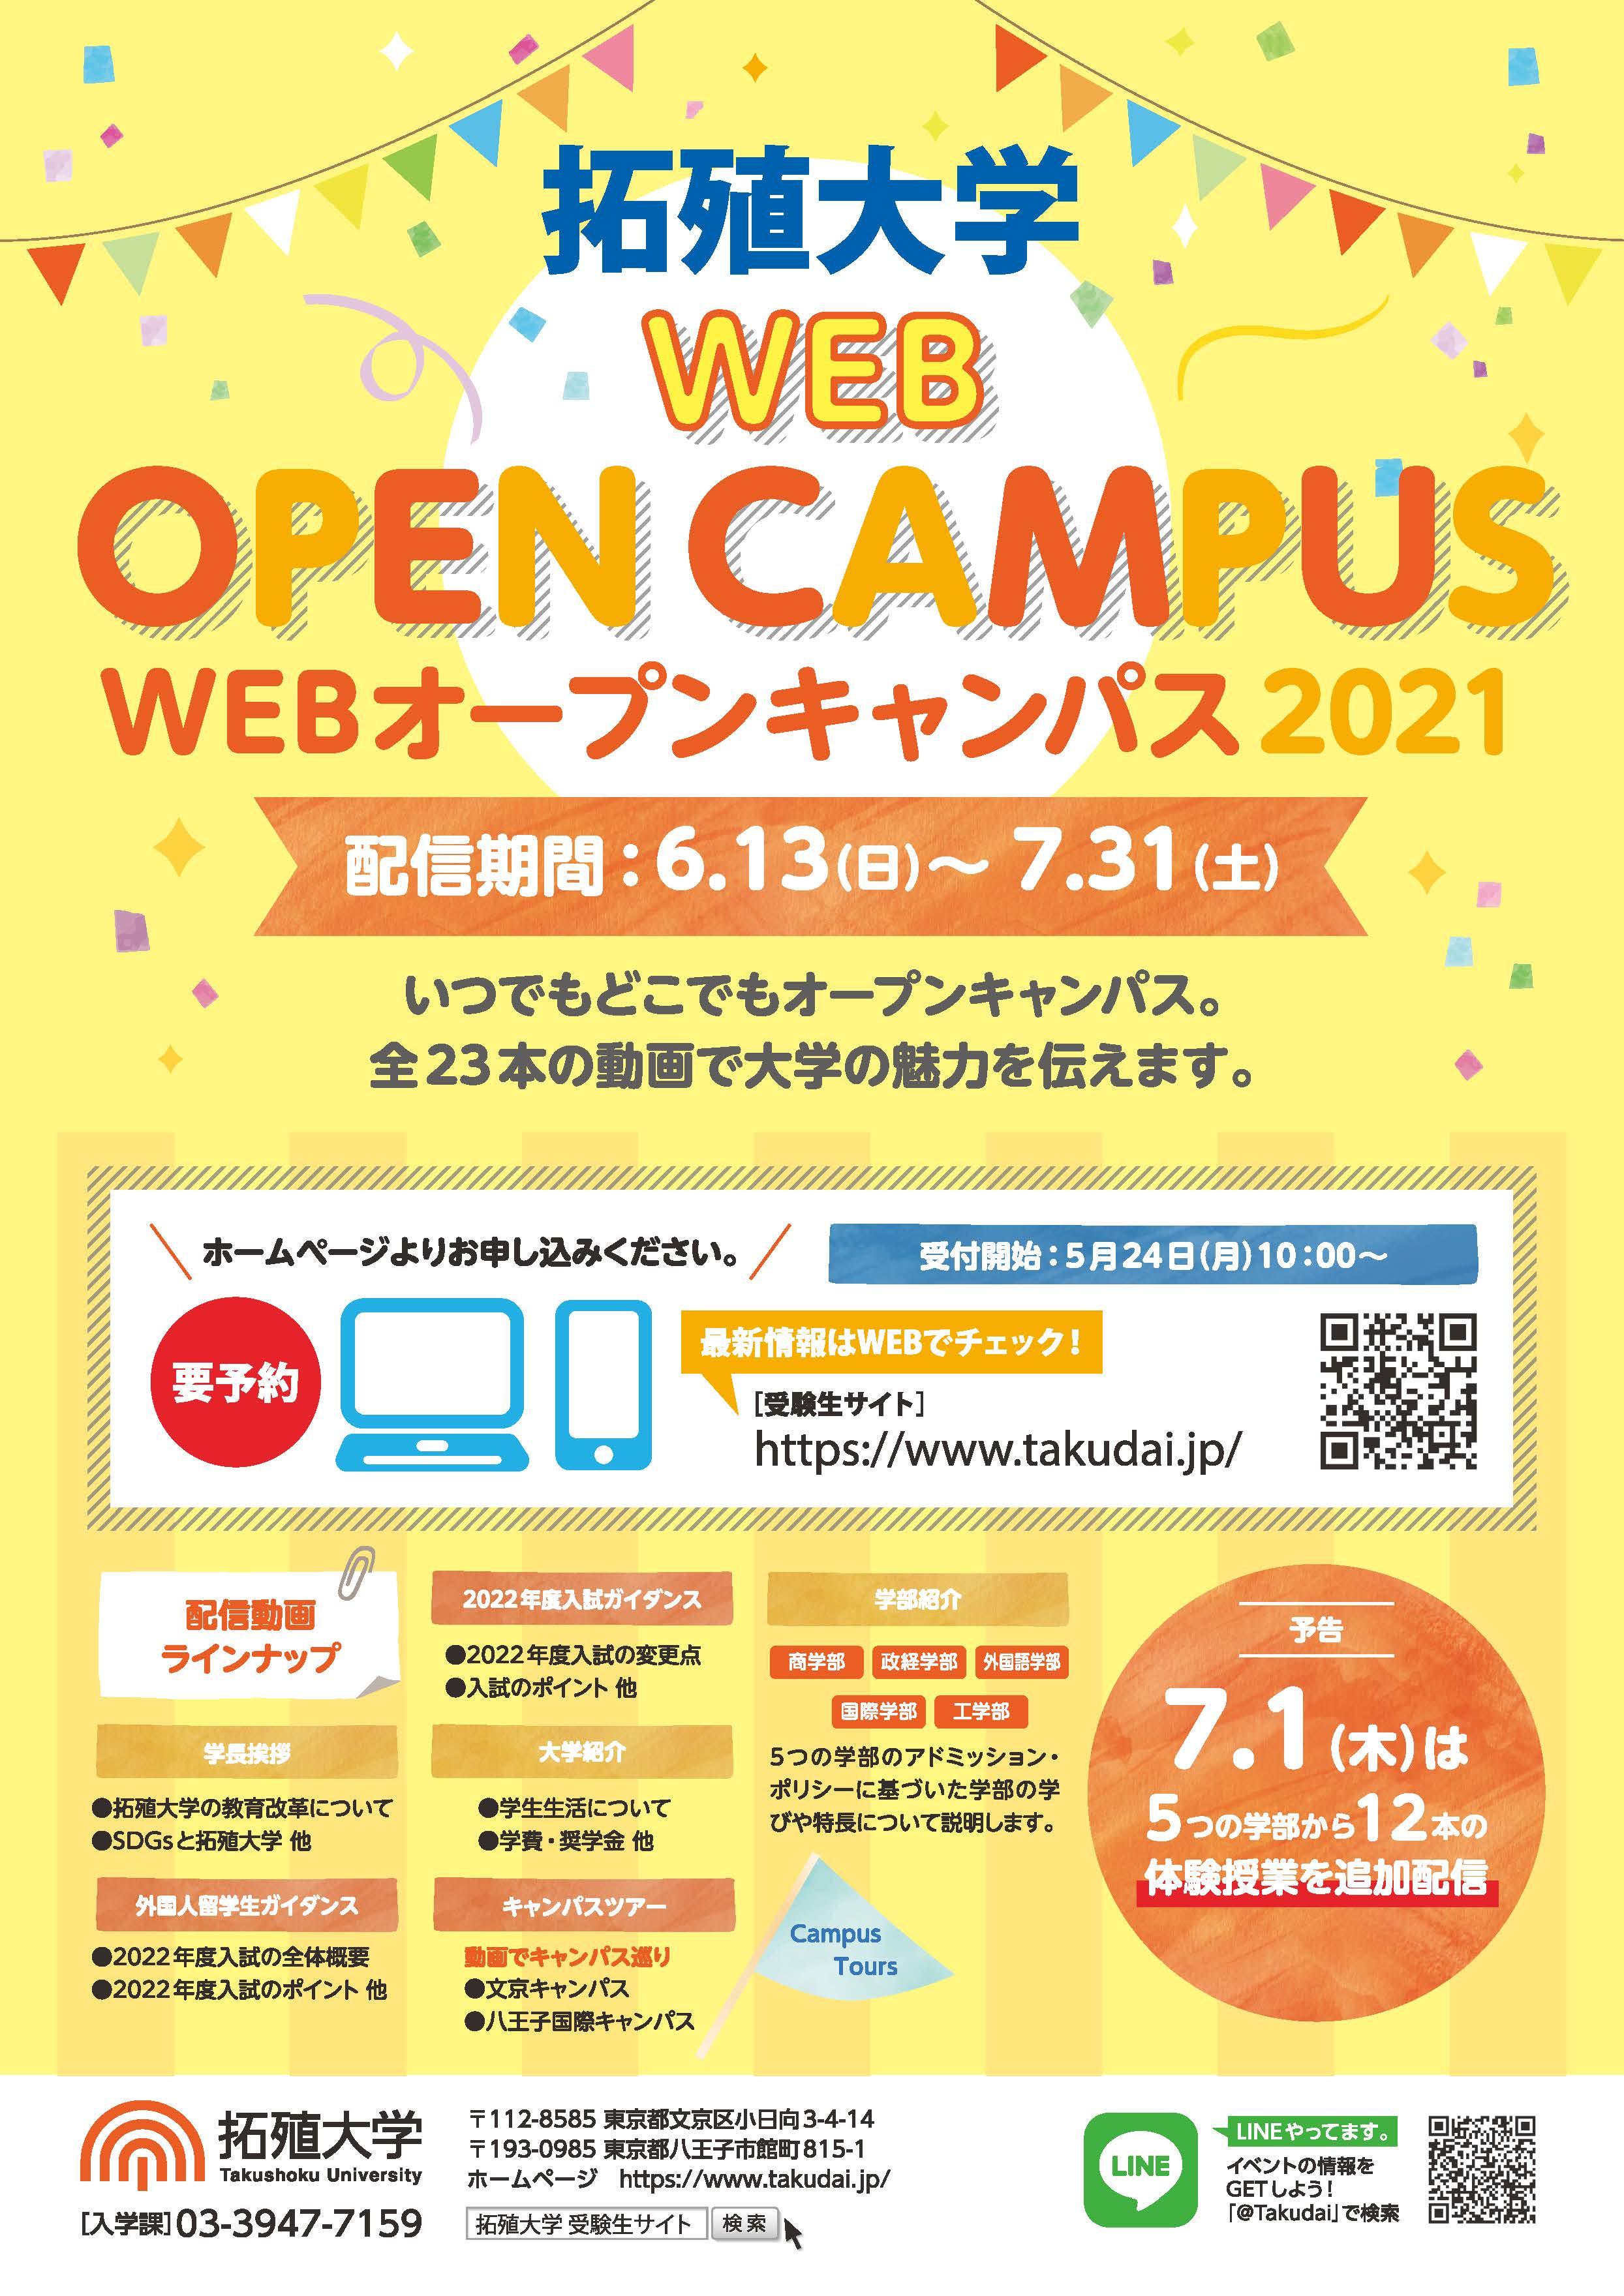 拓殖大学　「オープンキャンパス2021」の開催について